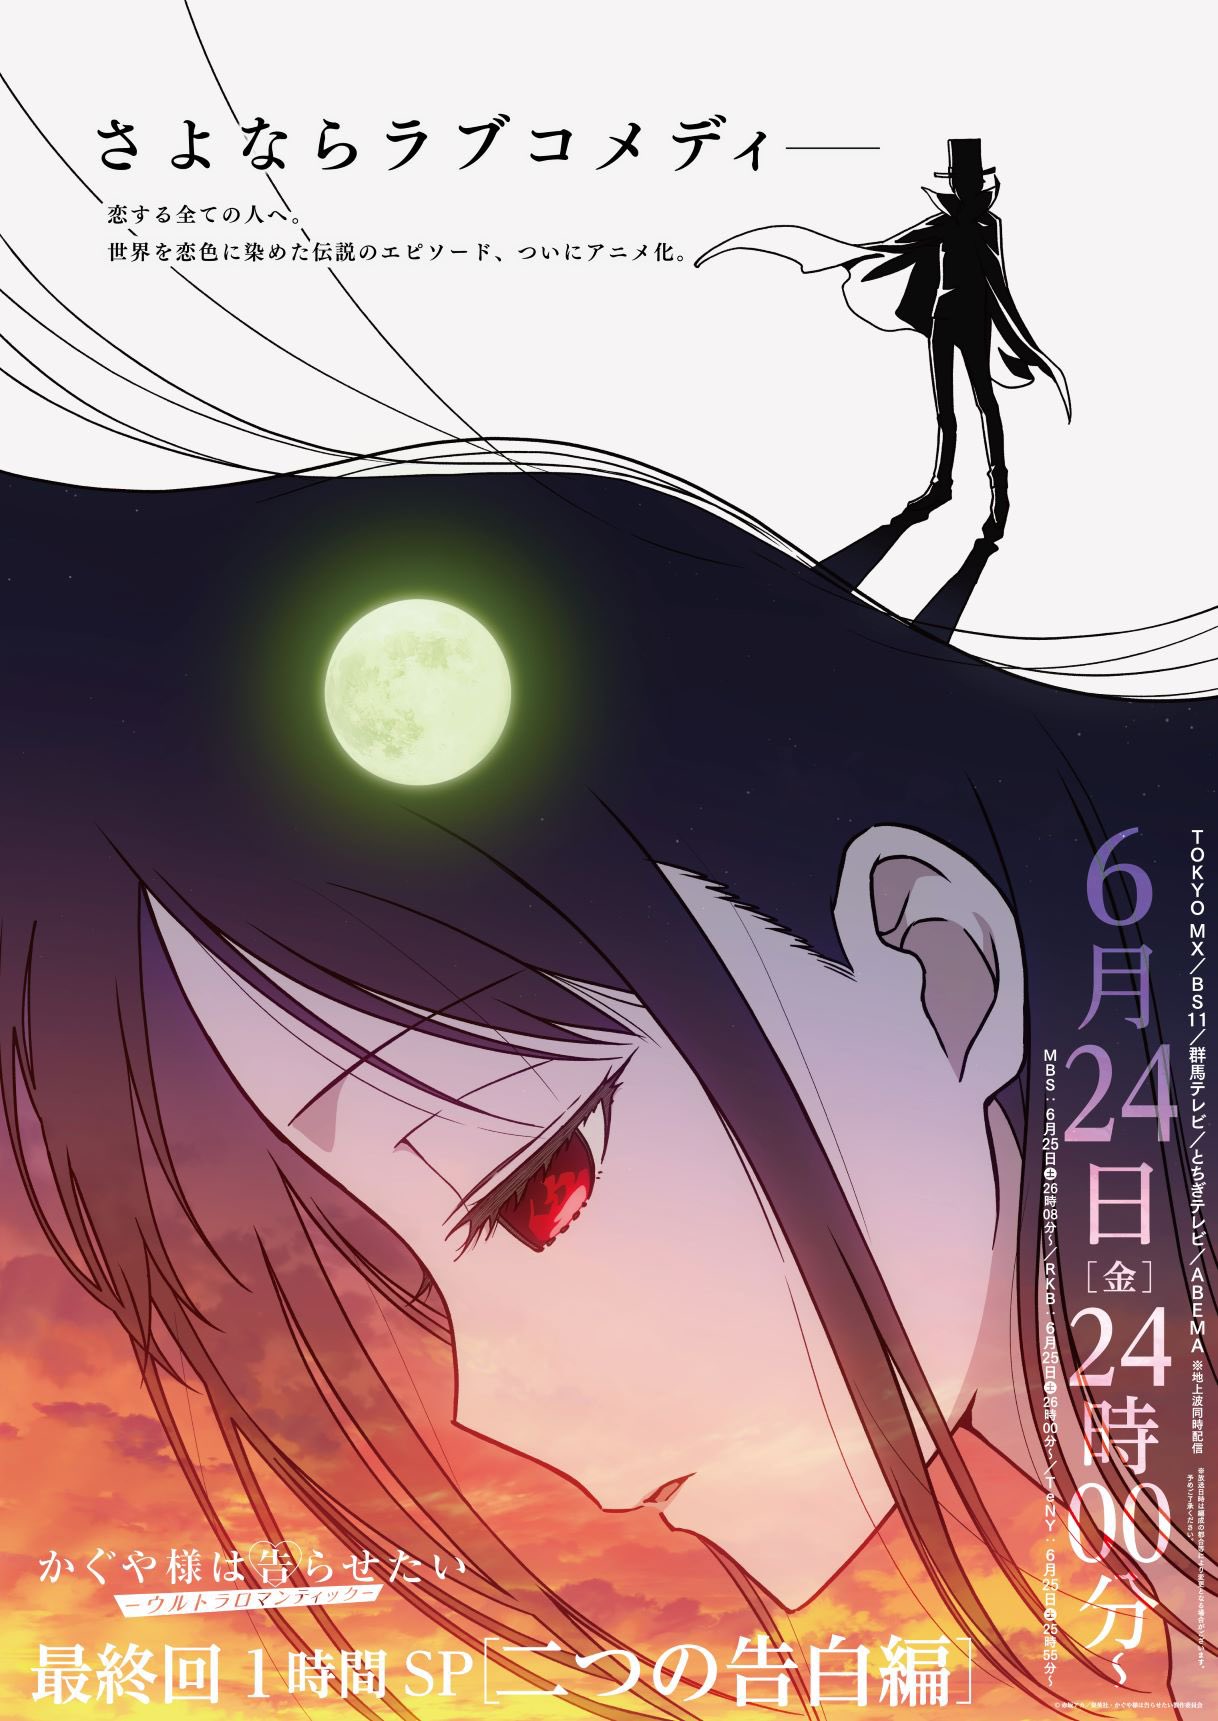 Kaguya-sama: love is war - Ultra romantic”, capítulo 1 online sub español:  ¿Cómo y dónde ver el estreno de la tercera temporada?, Anime, Manga, México, Japón, Animes